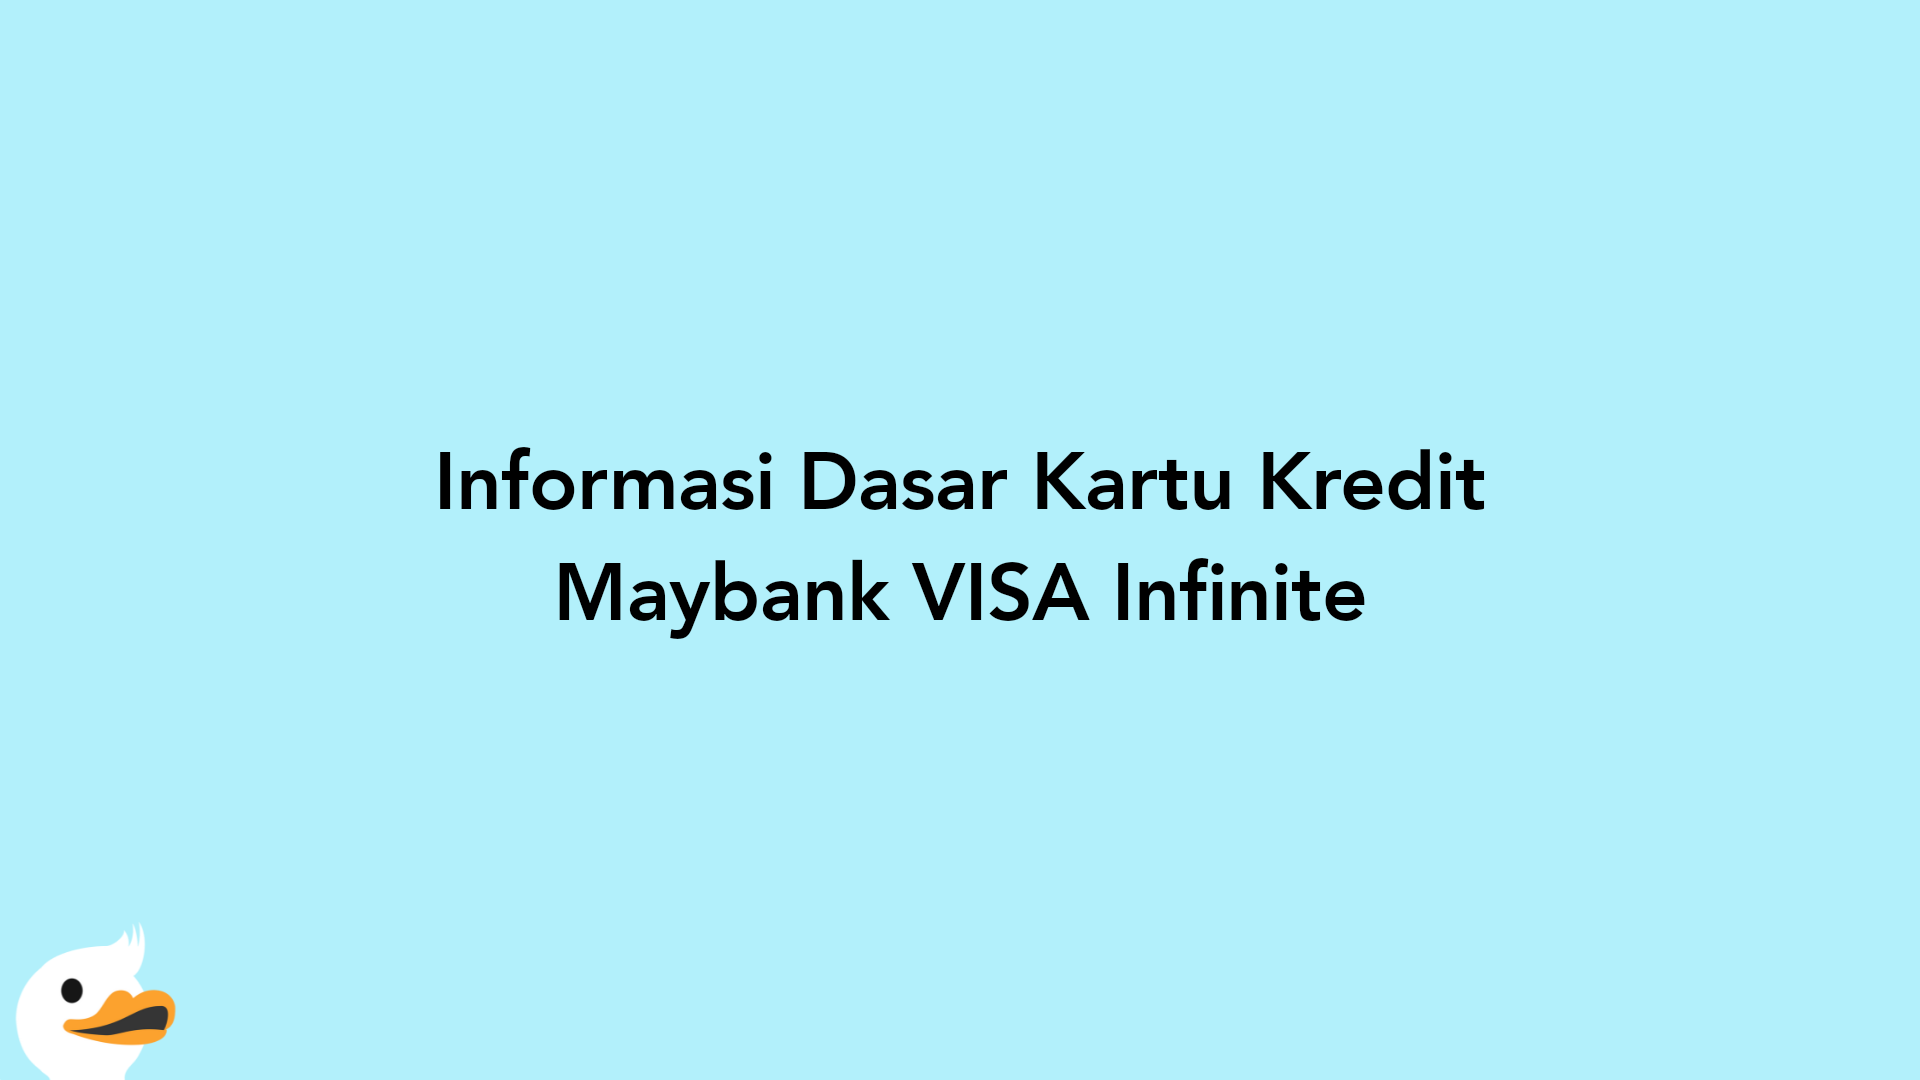 Informasi Dasar Kartu Kredit Maybank VISA Infinite